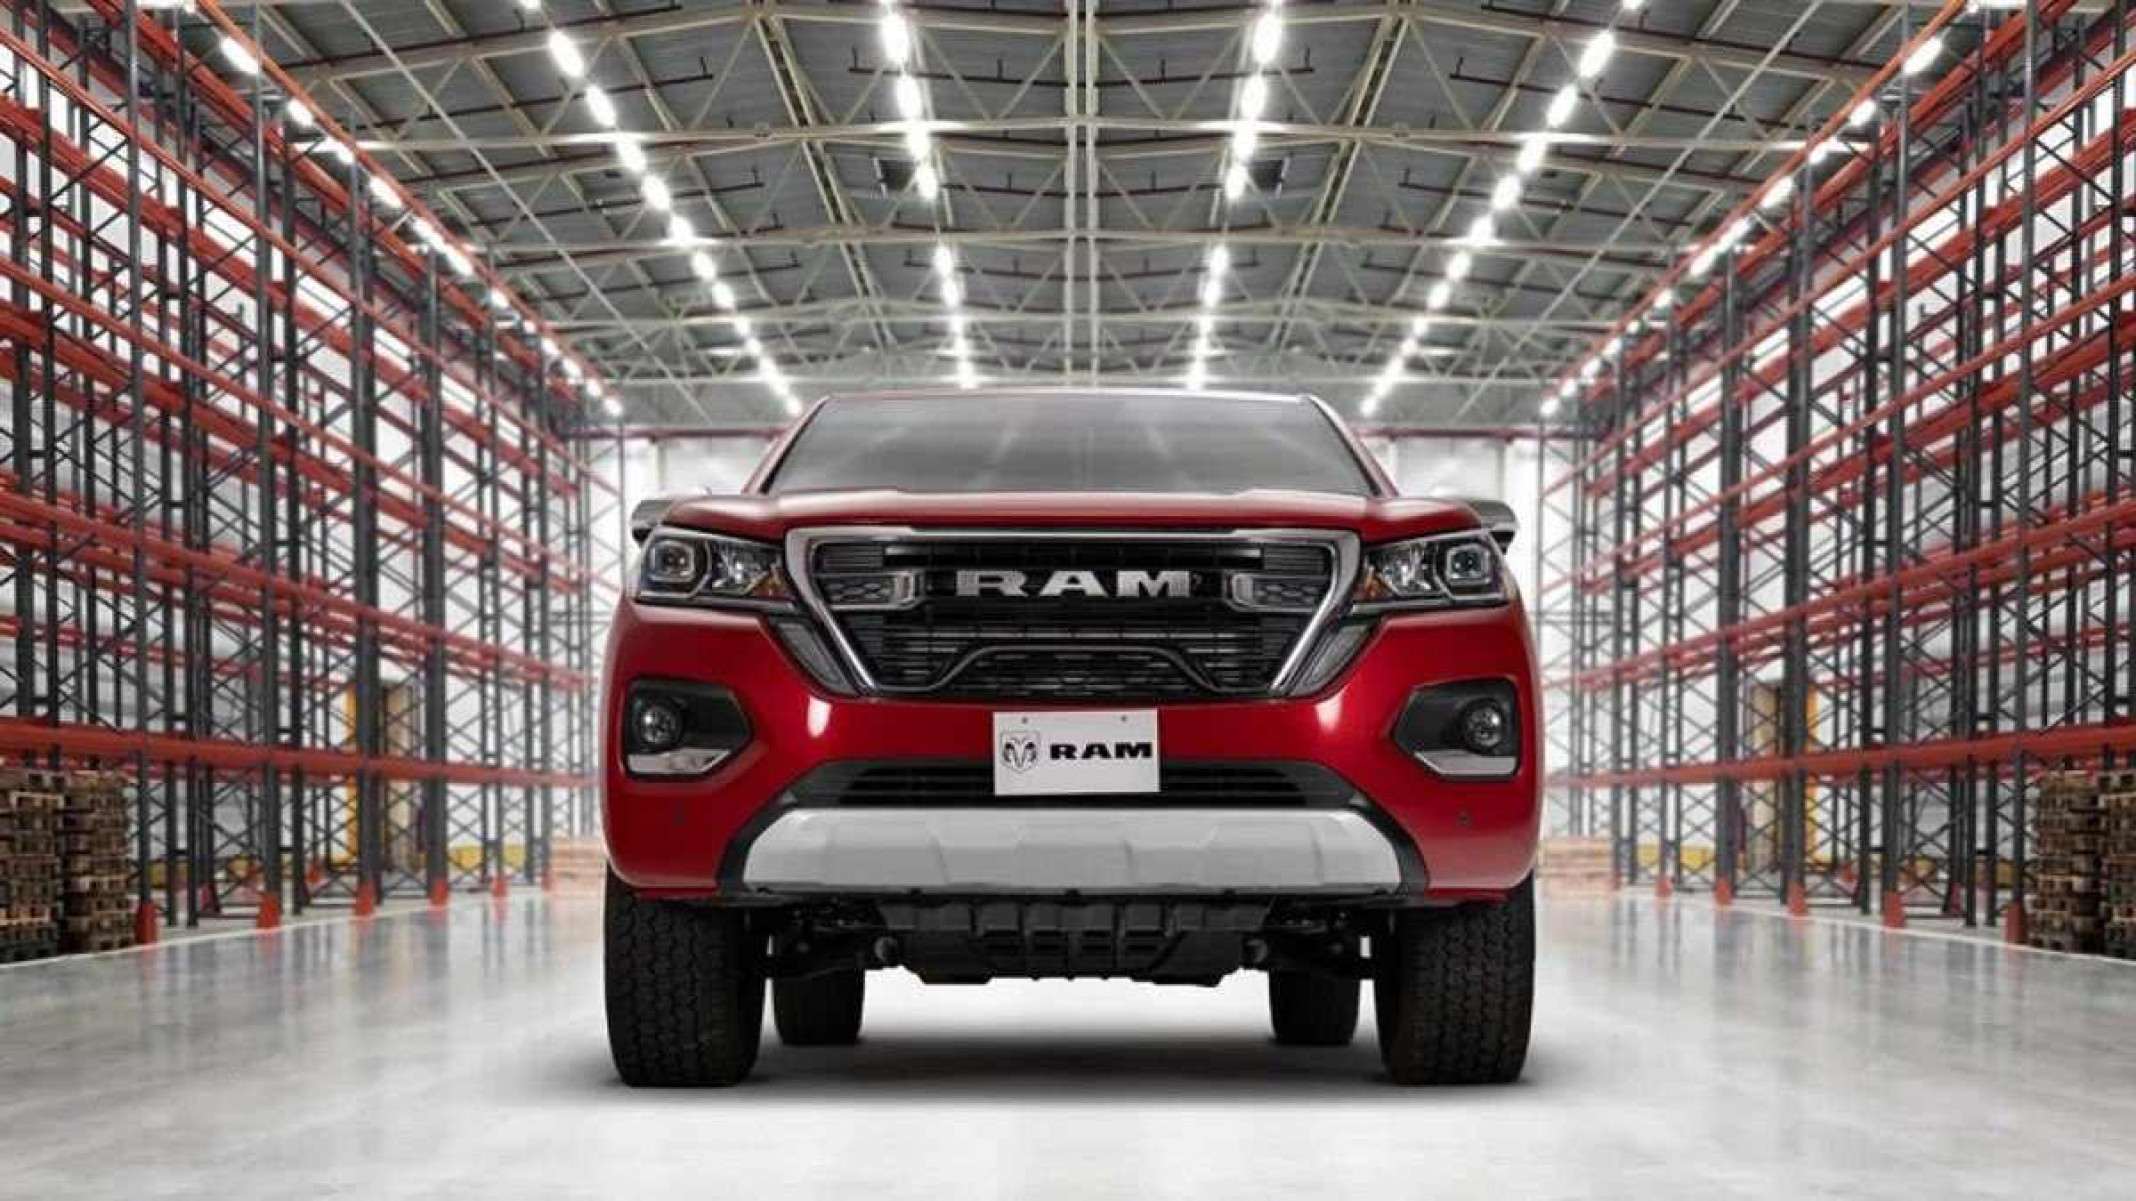 Gêmea da Fiat Titano é lançada no México pela Ram com motor mais potente